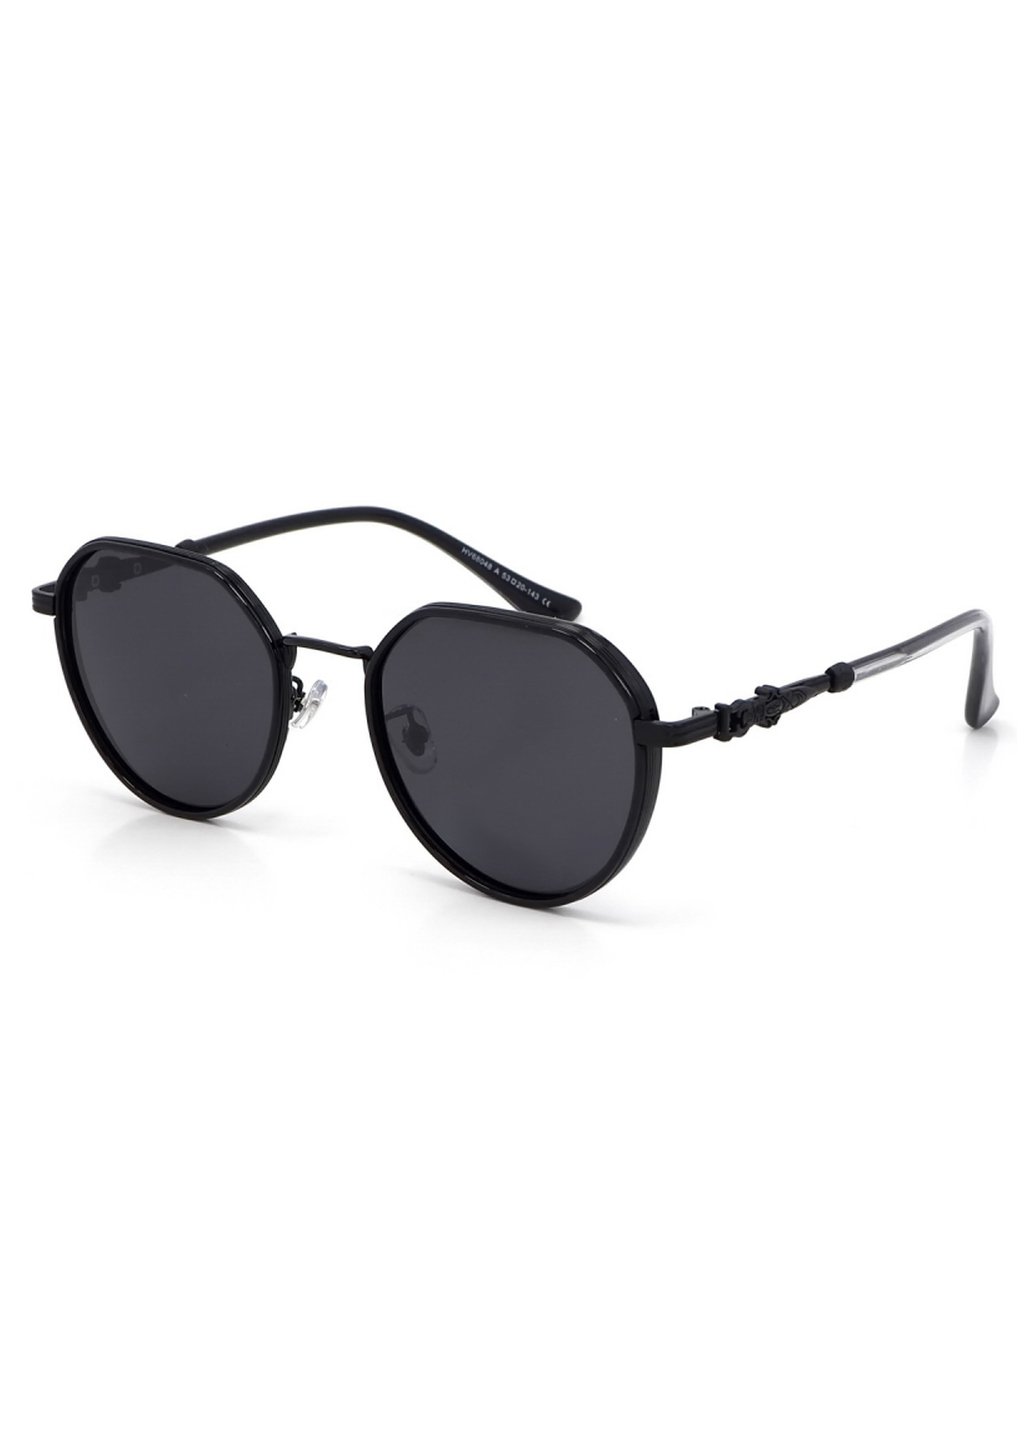 Купить Солнцезащитные очки c поляризацией HAVVS HV68048 170017 - Черный в интернет-магазине